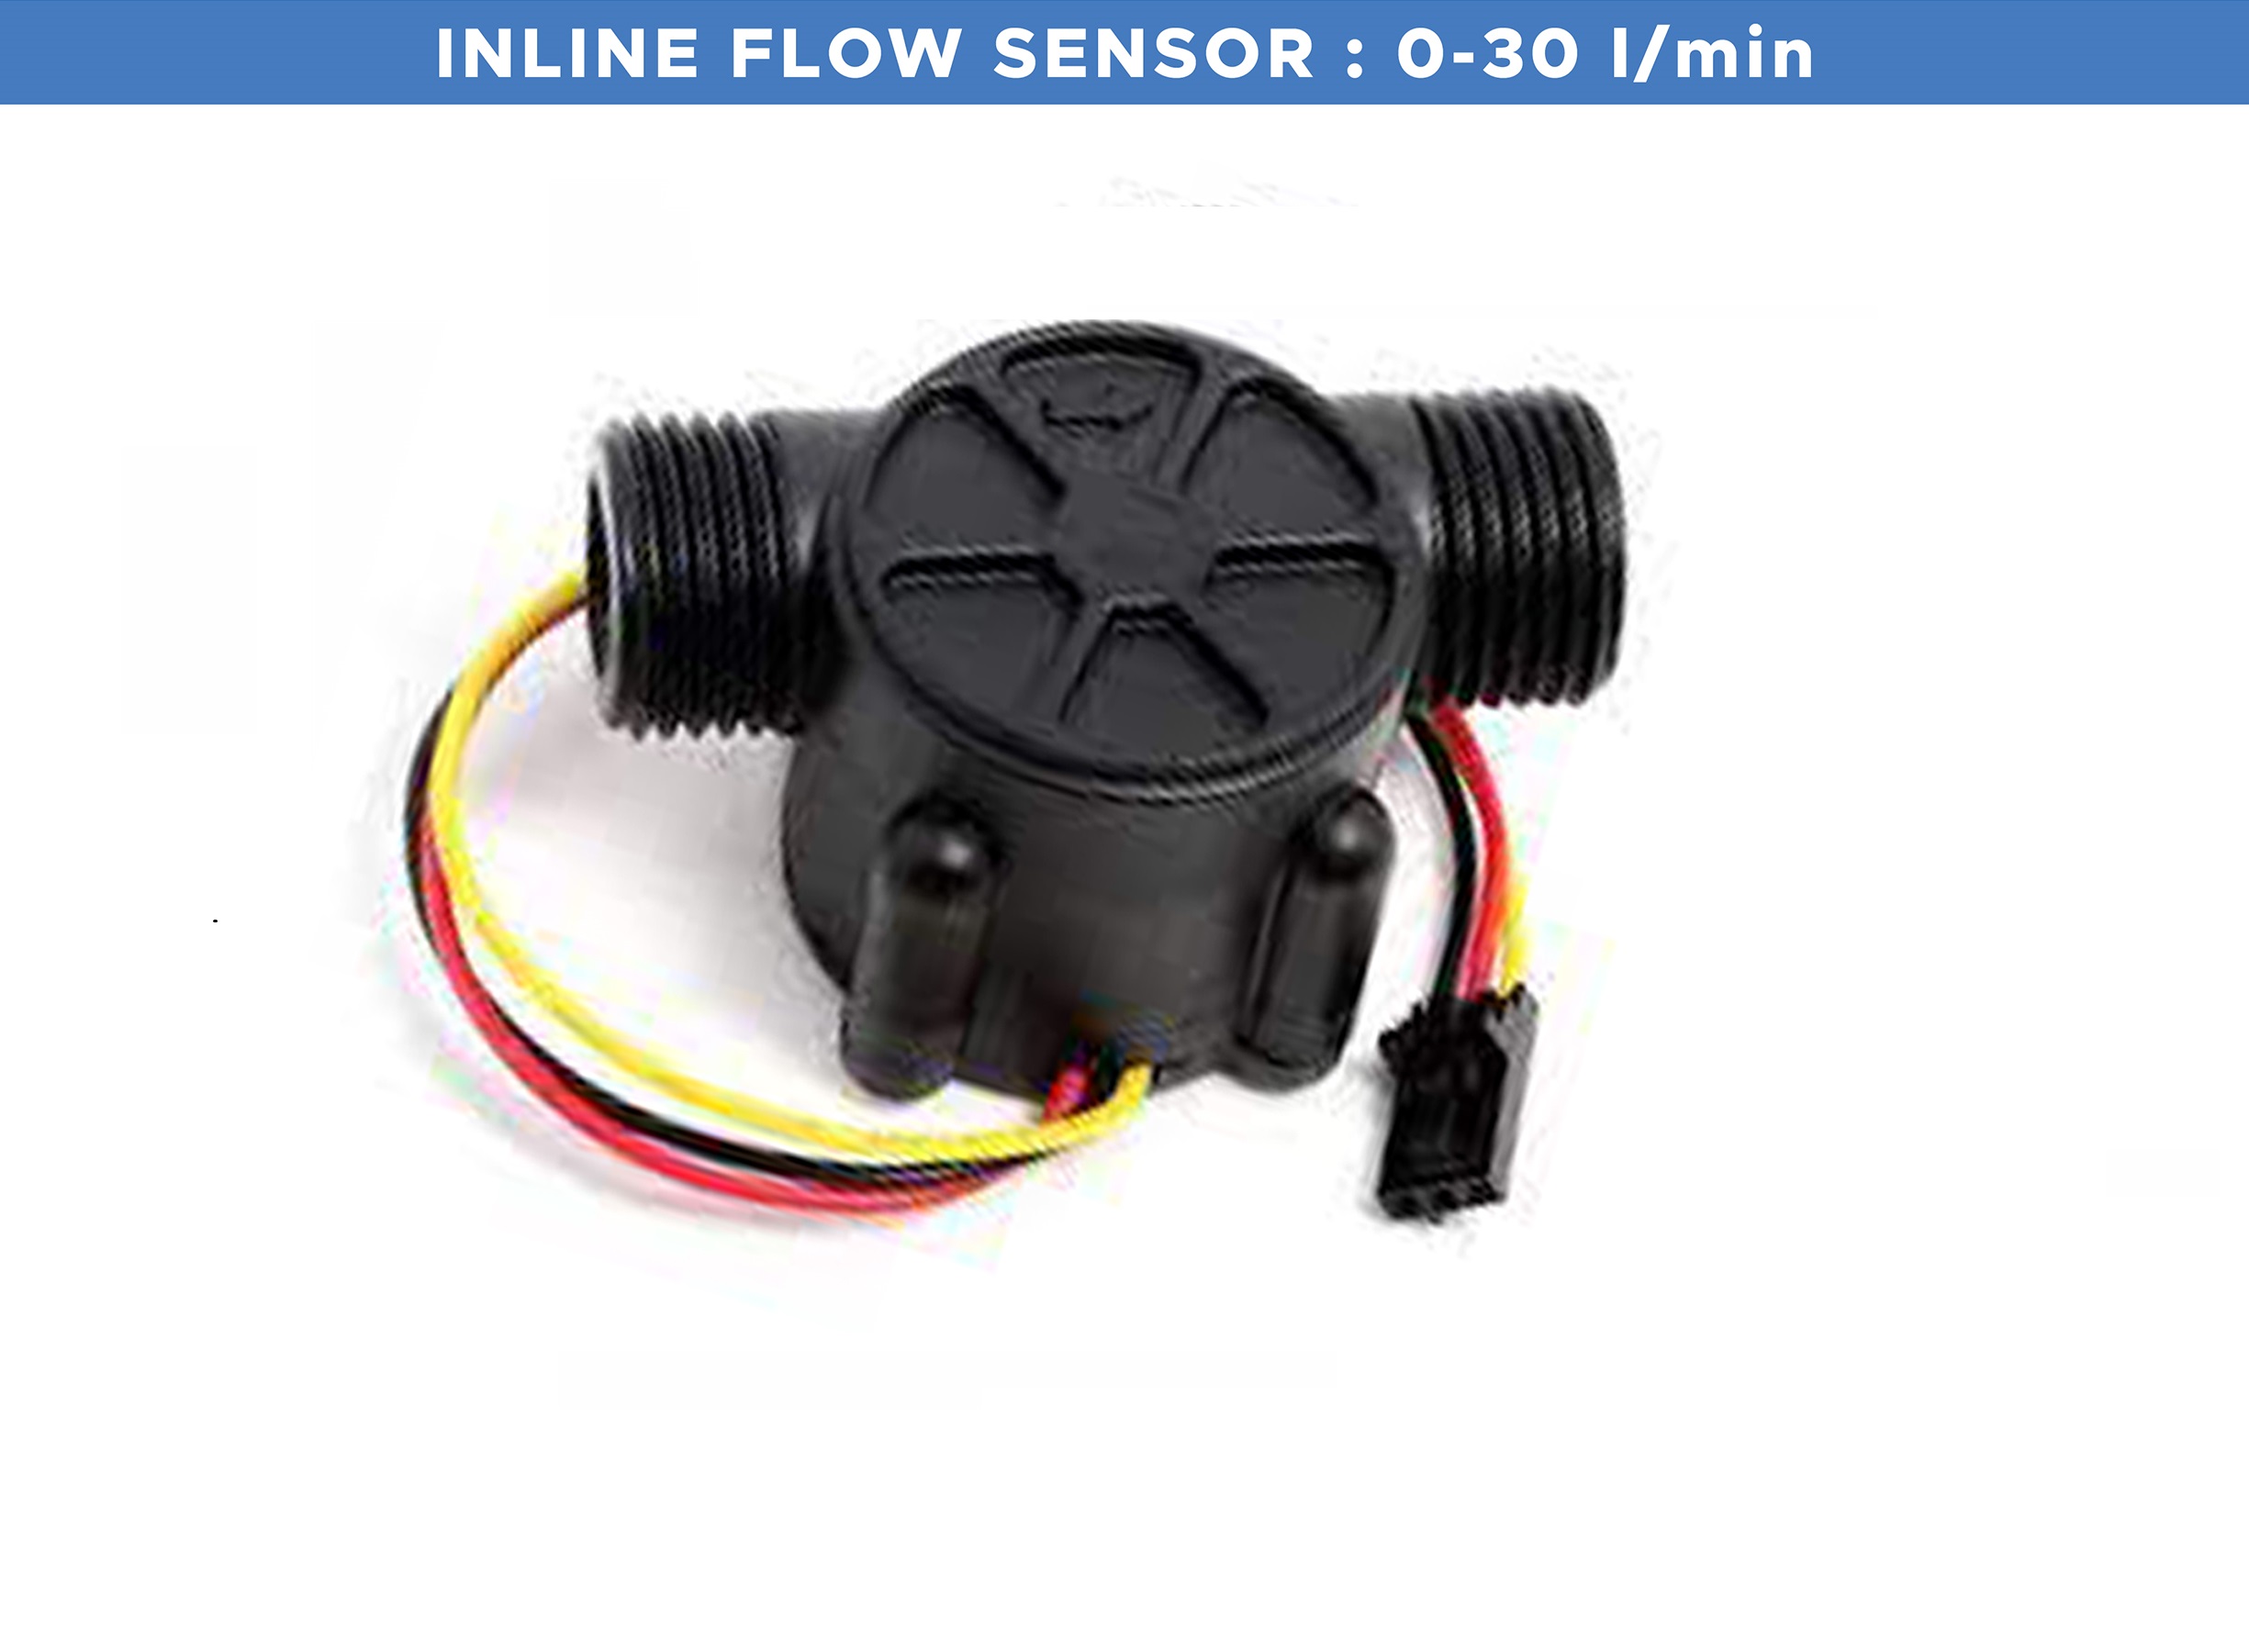 Flow Sensor